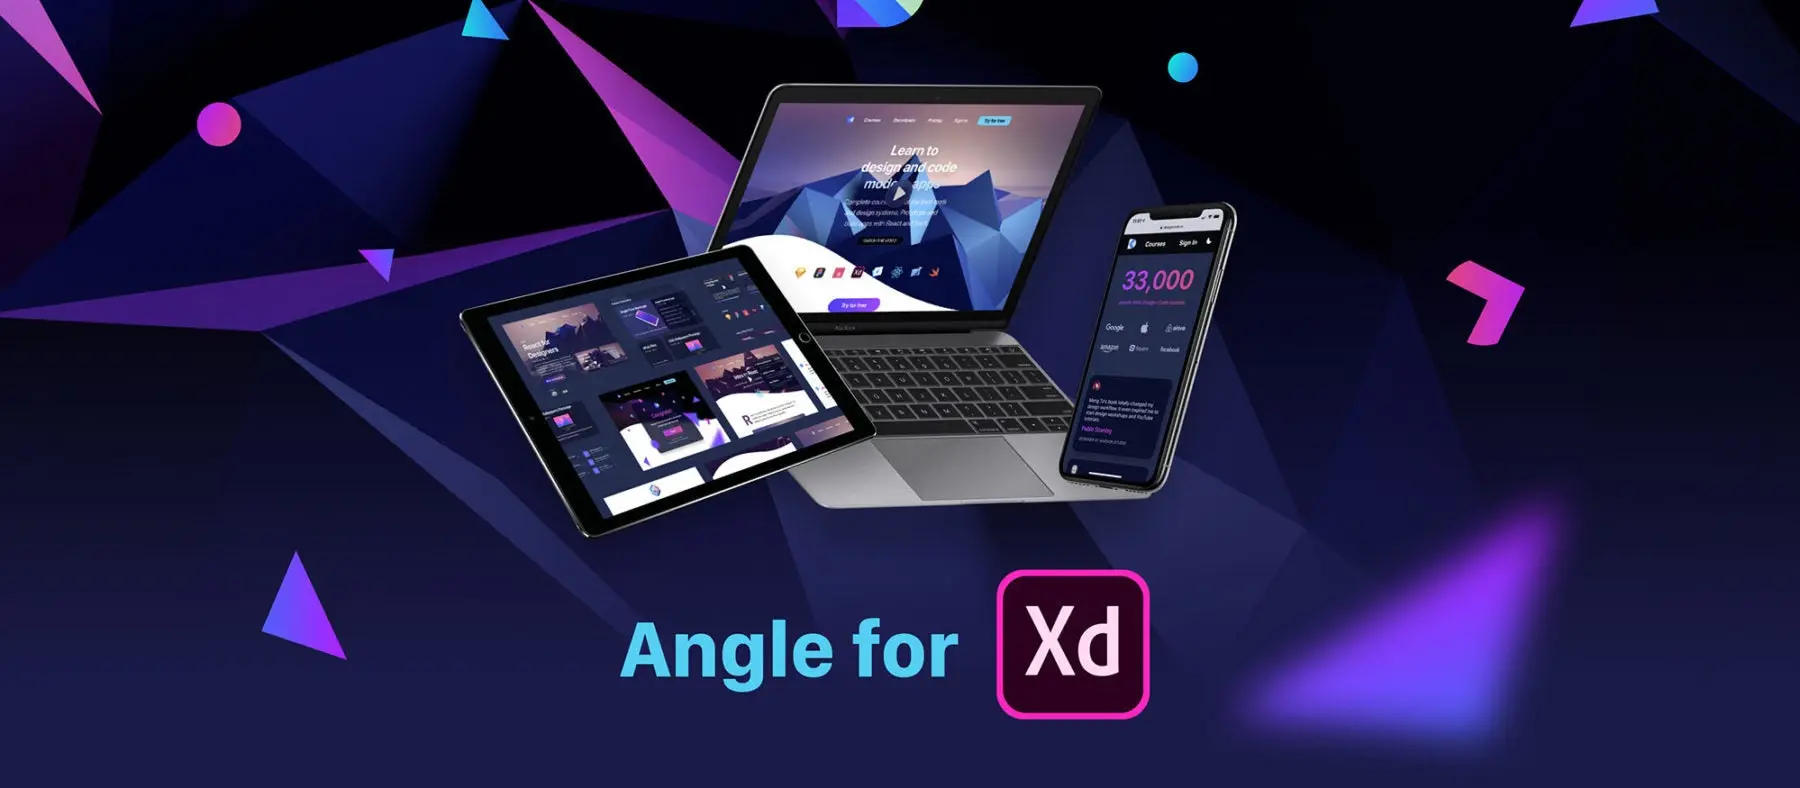 Angle for XD image.